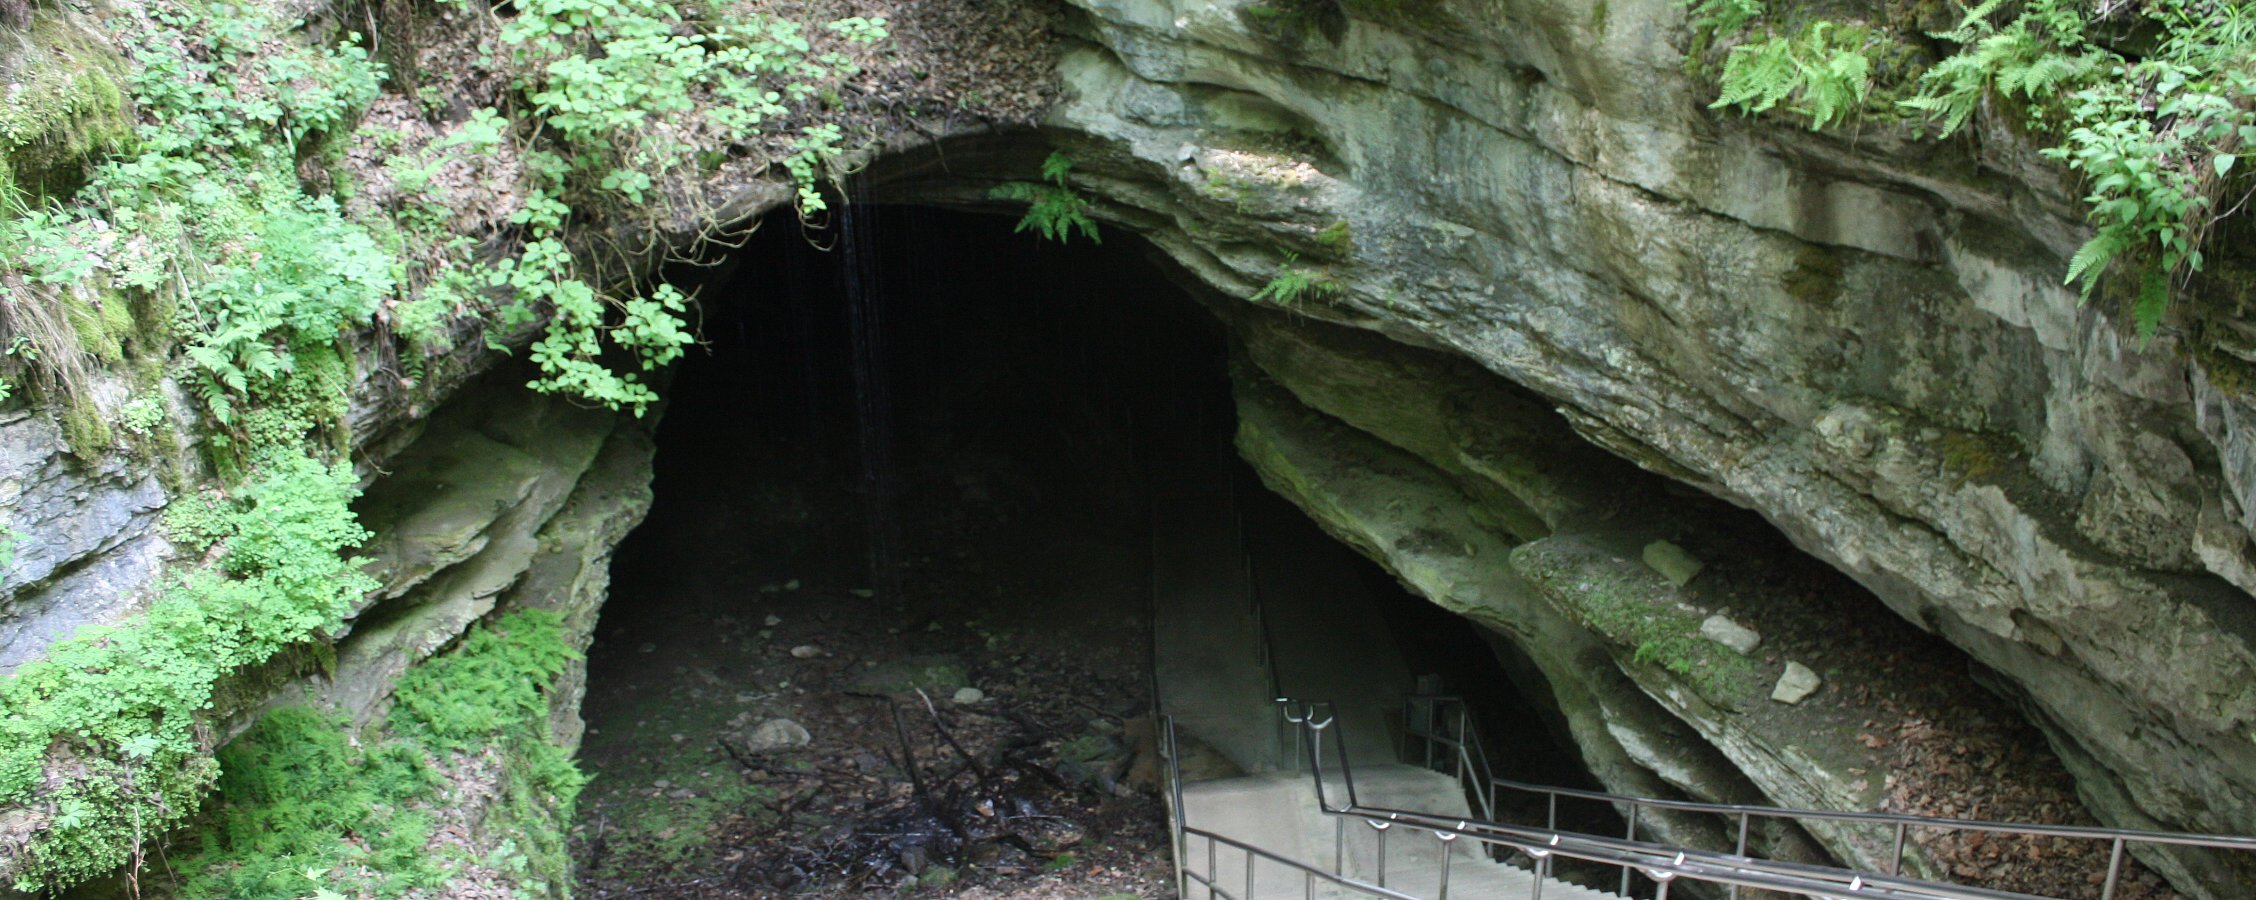 Национальный парк Мамонтова пещера Кентукки 2022 все самое лучшее